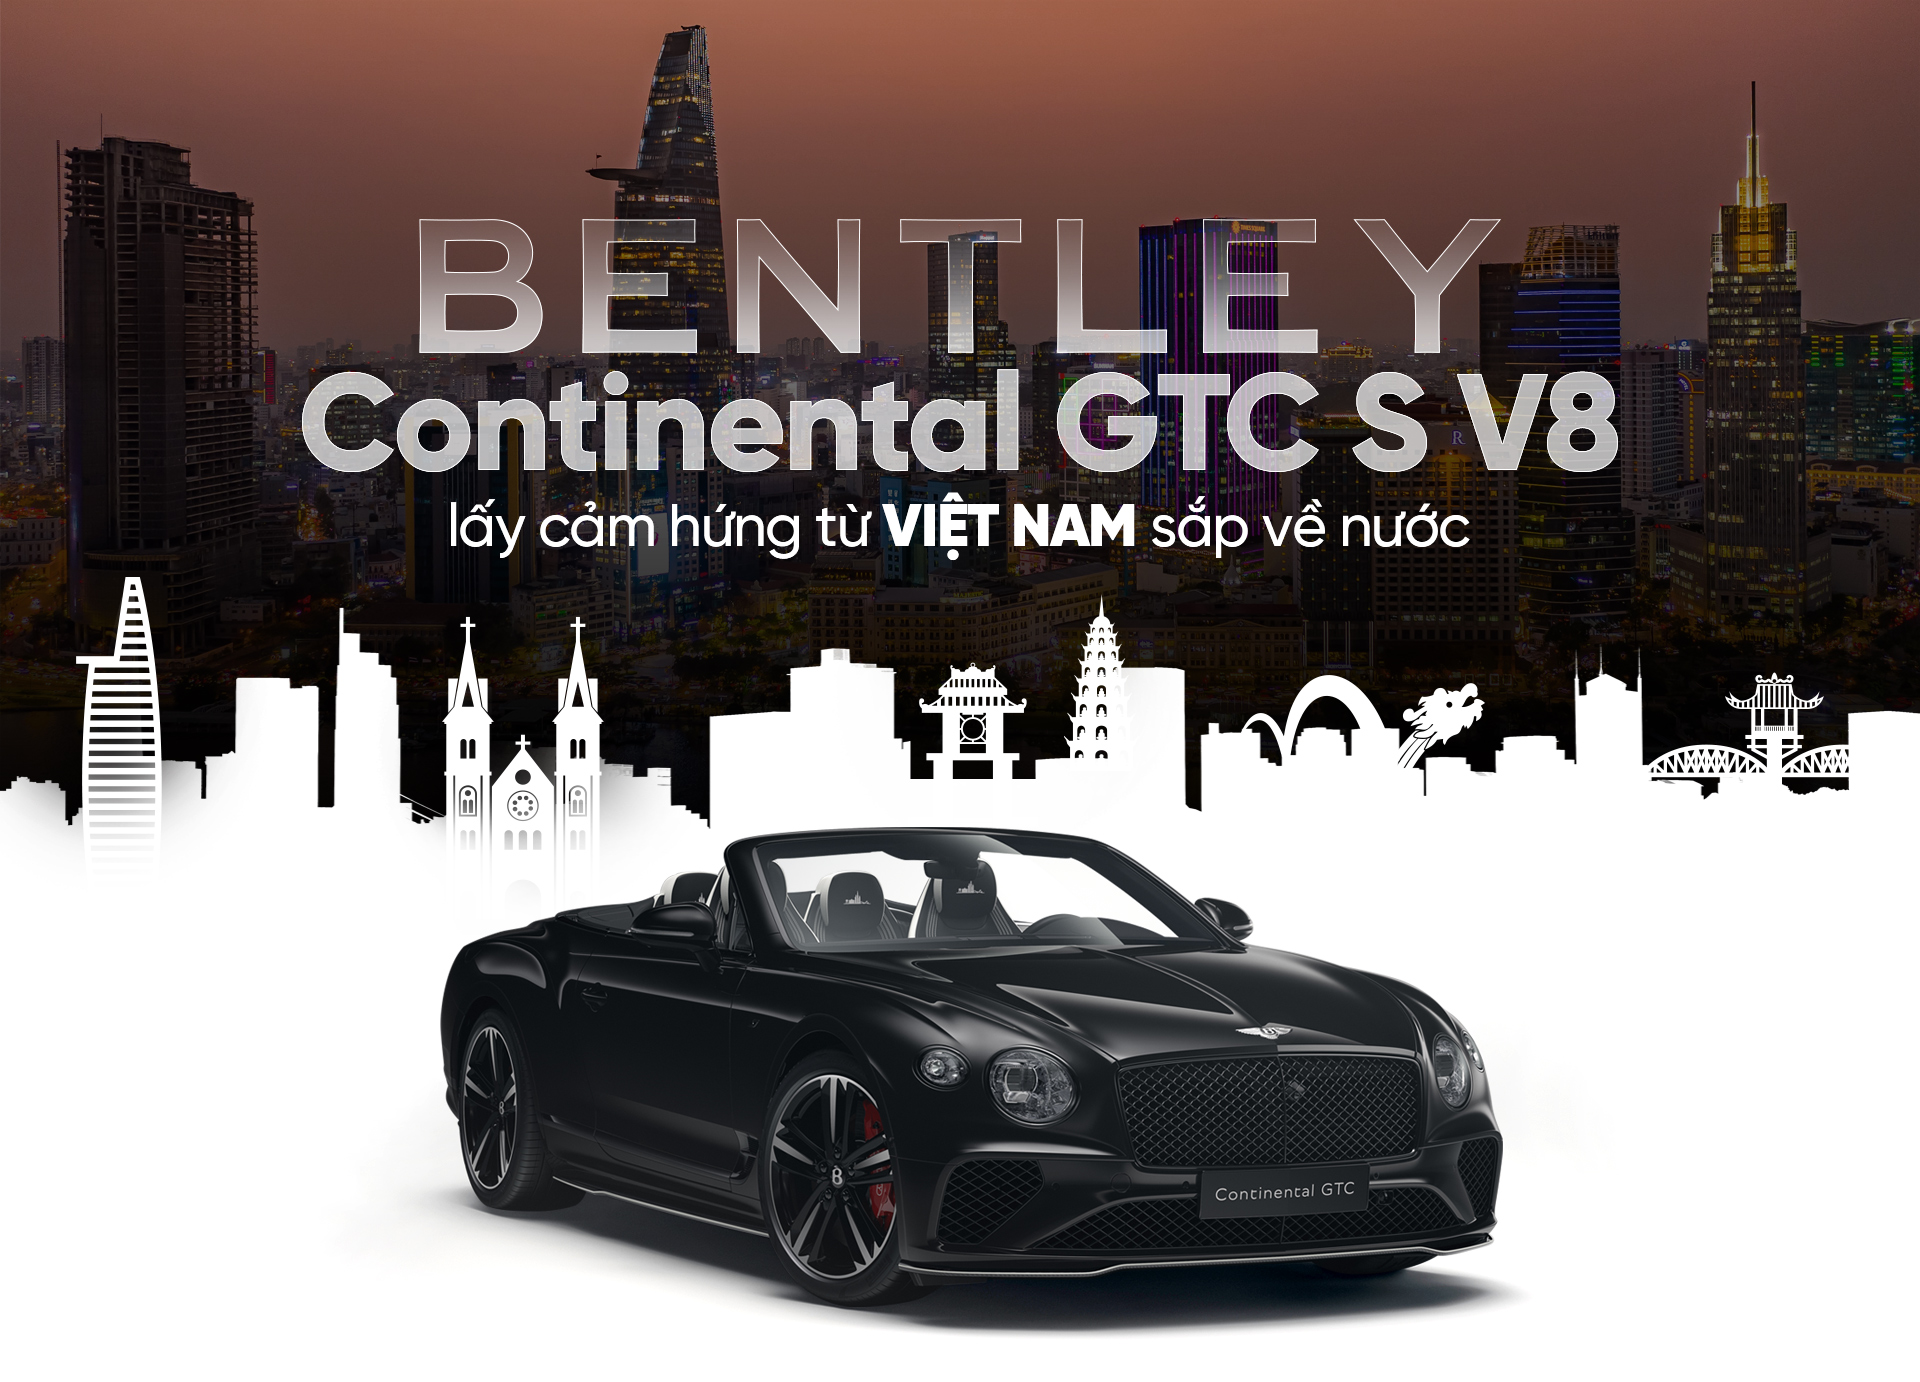 Bentley Continental GTC S V8 lấy cảm hứng từ Việt Nam sắp về nước